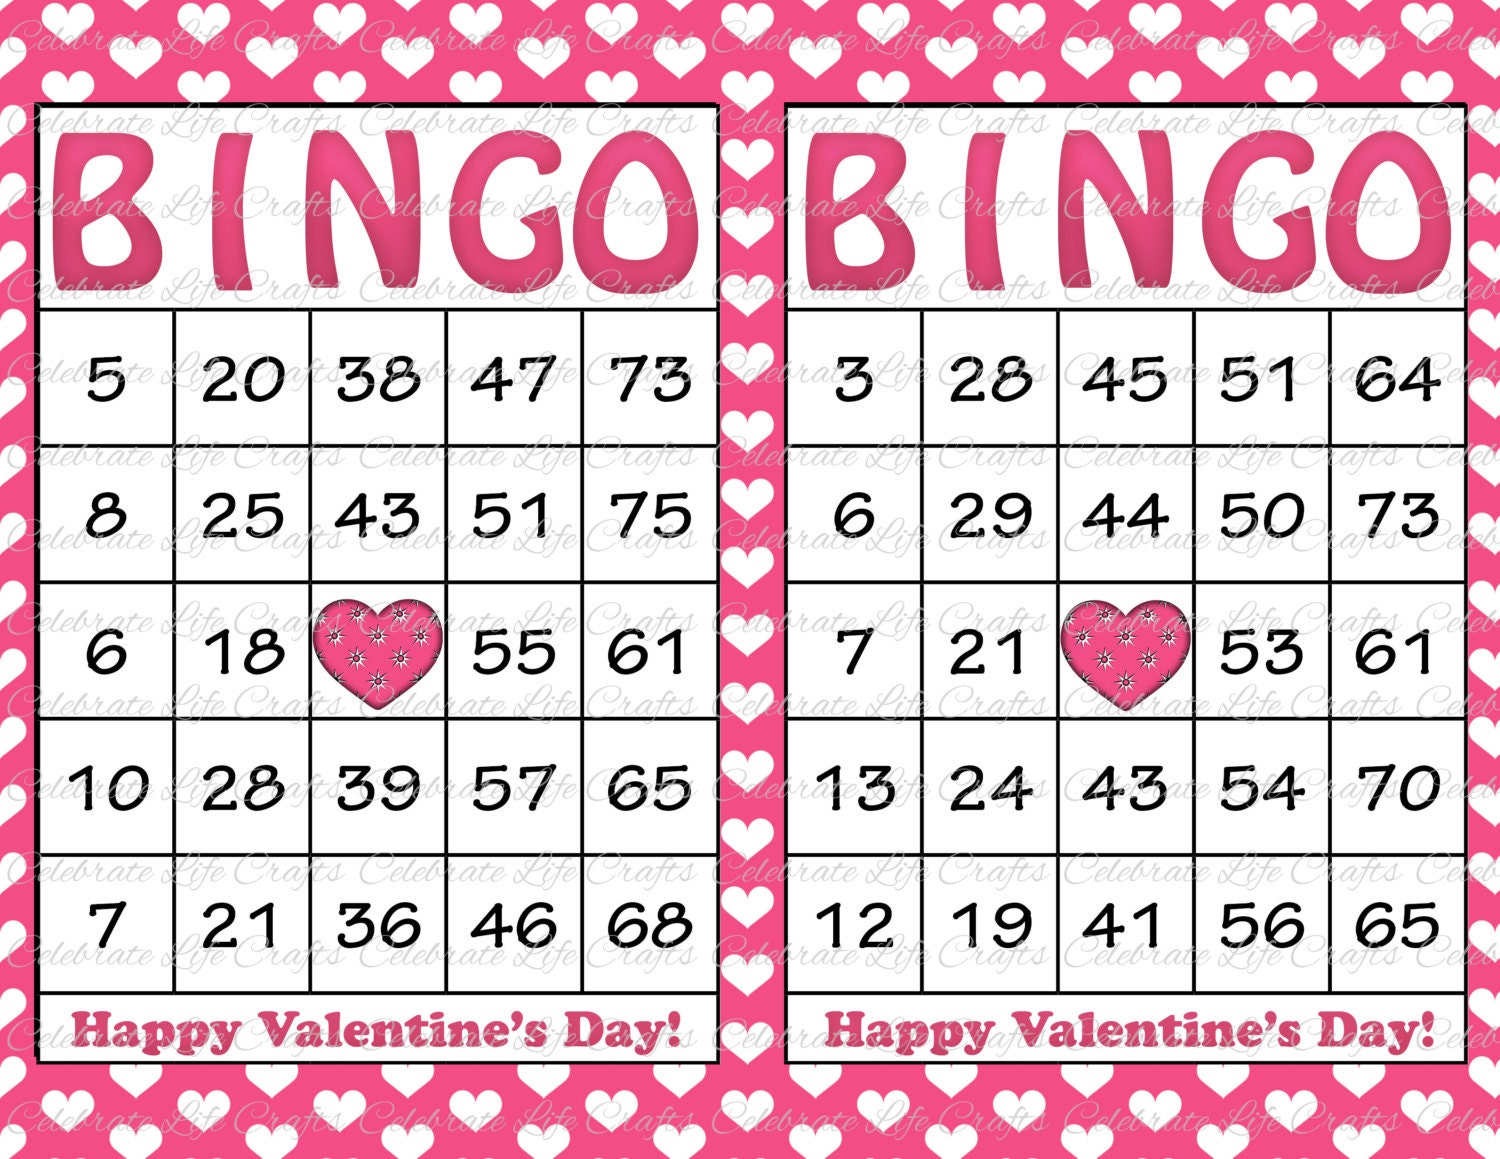 bingo multiple winners